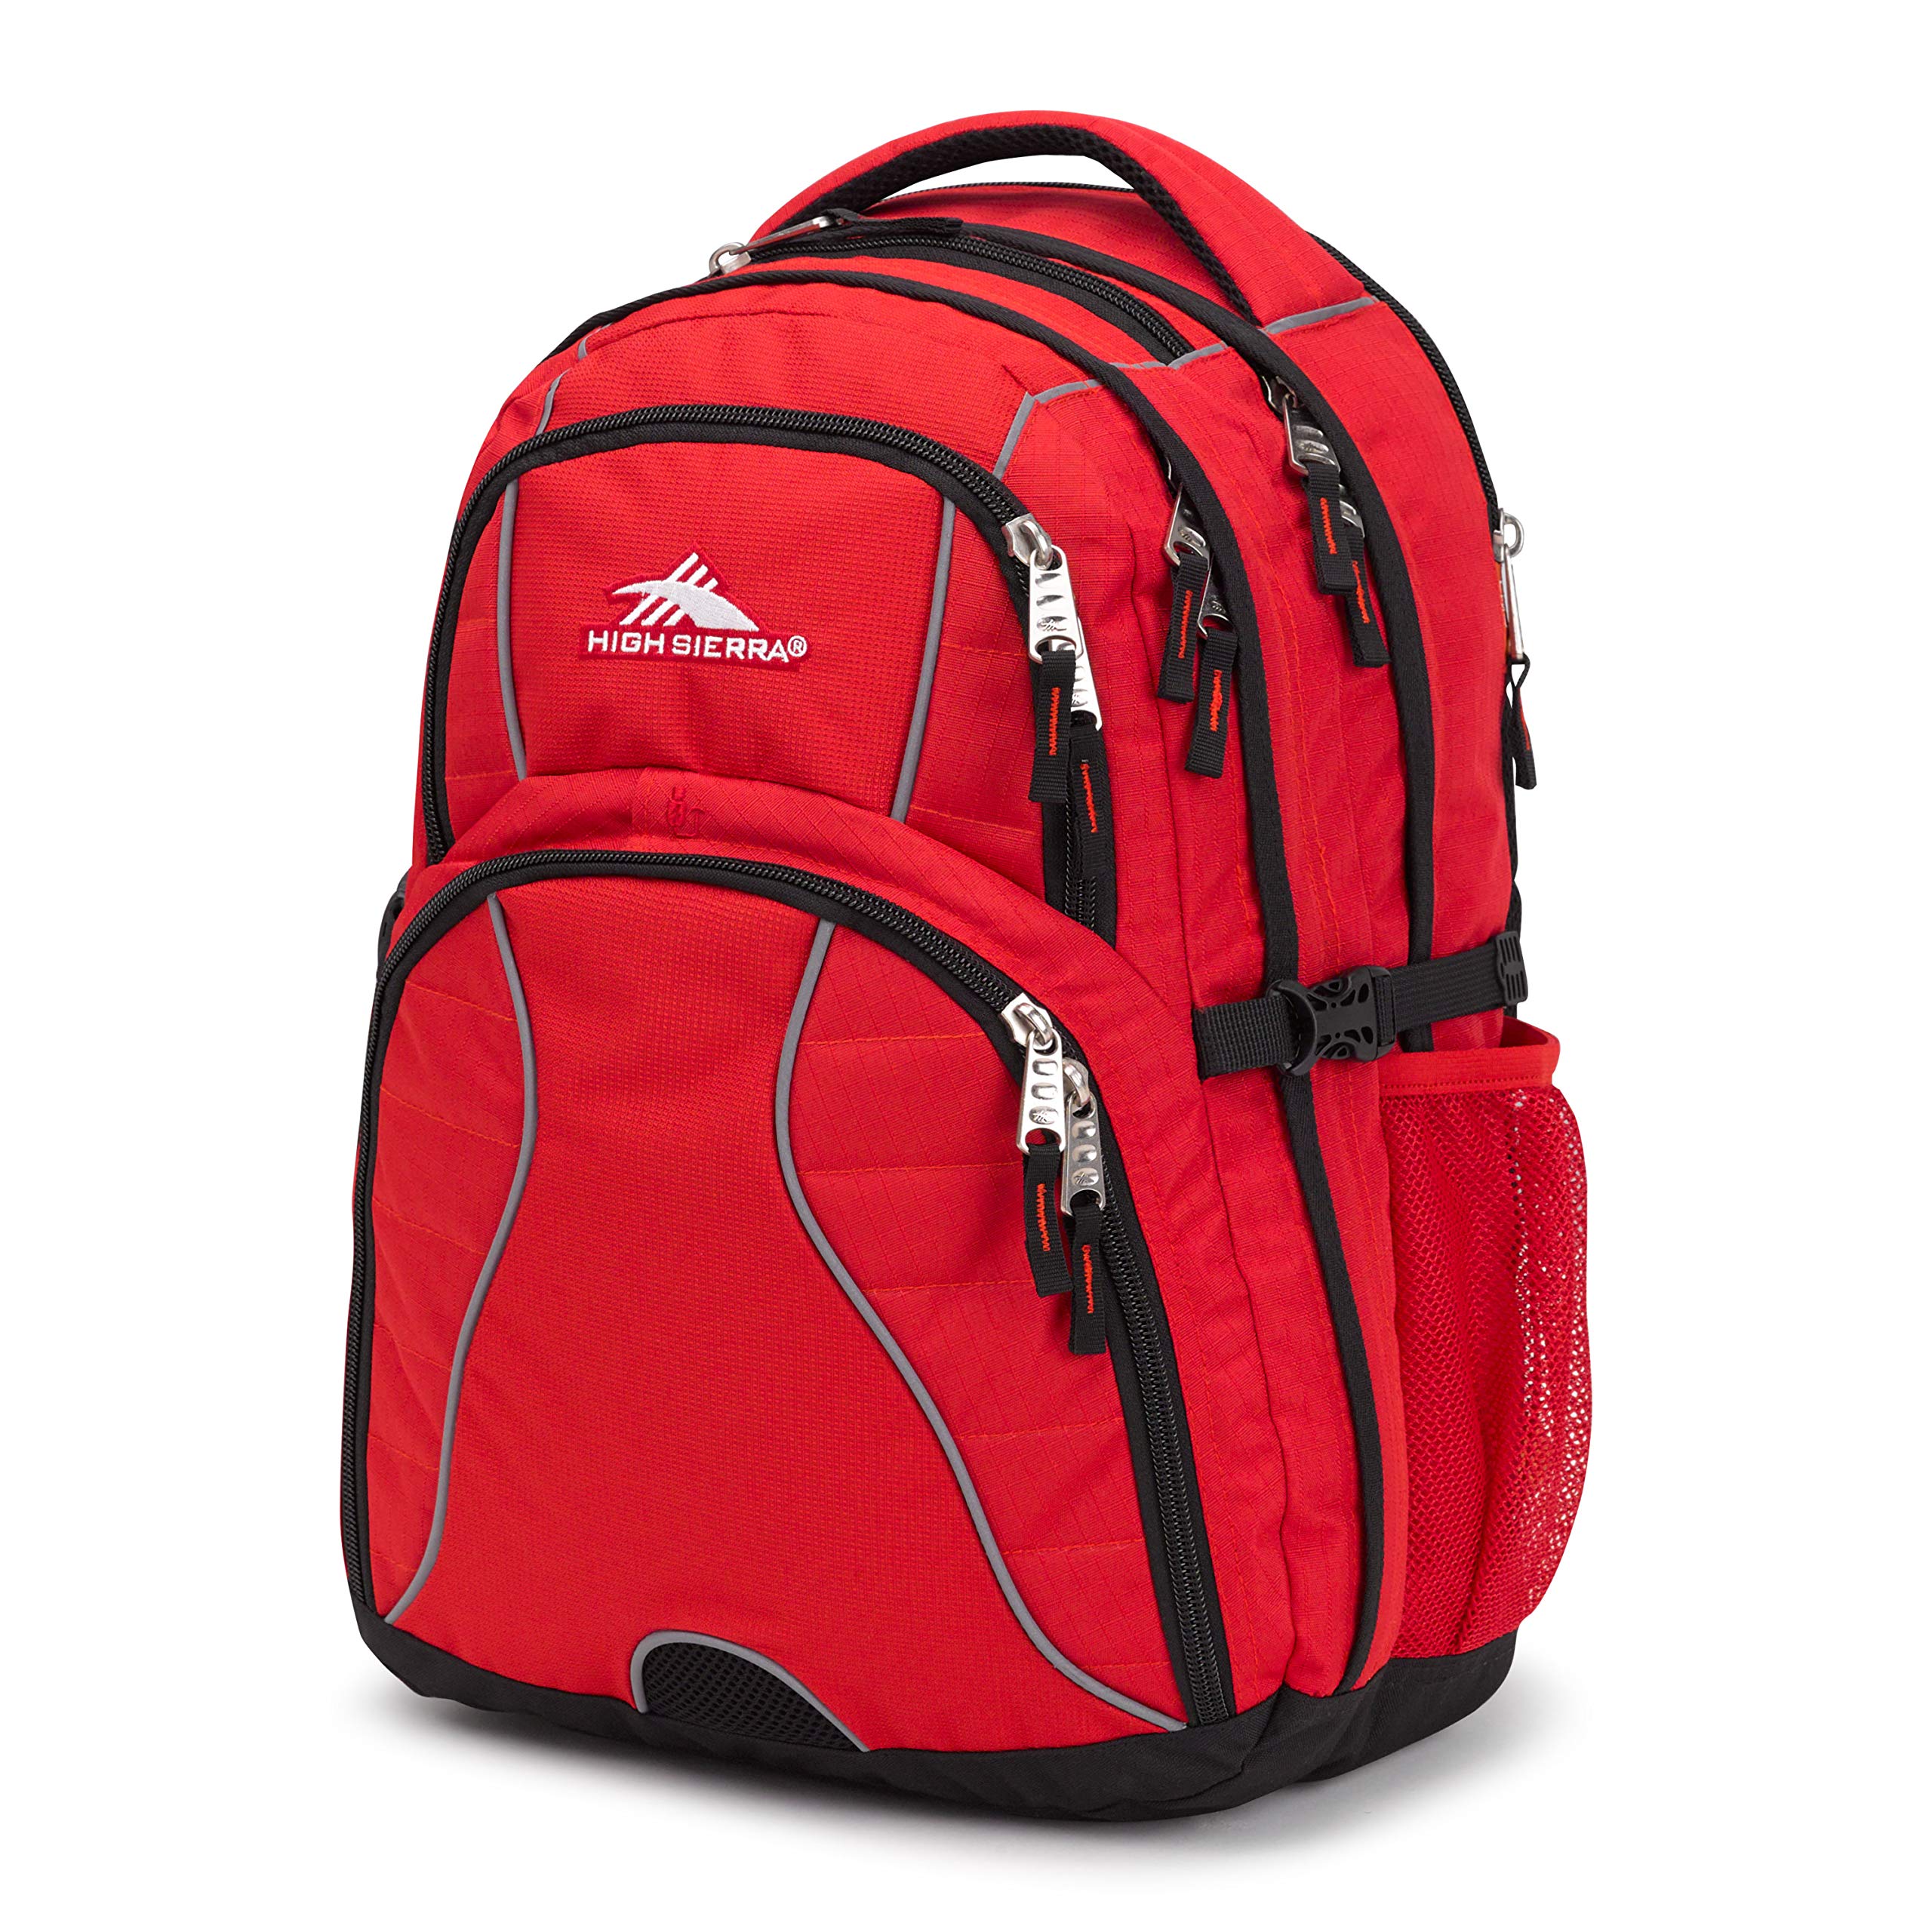 High Sierra Swerve Laptop Backpack, Crimson/Black, One Size